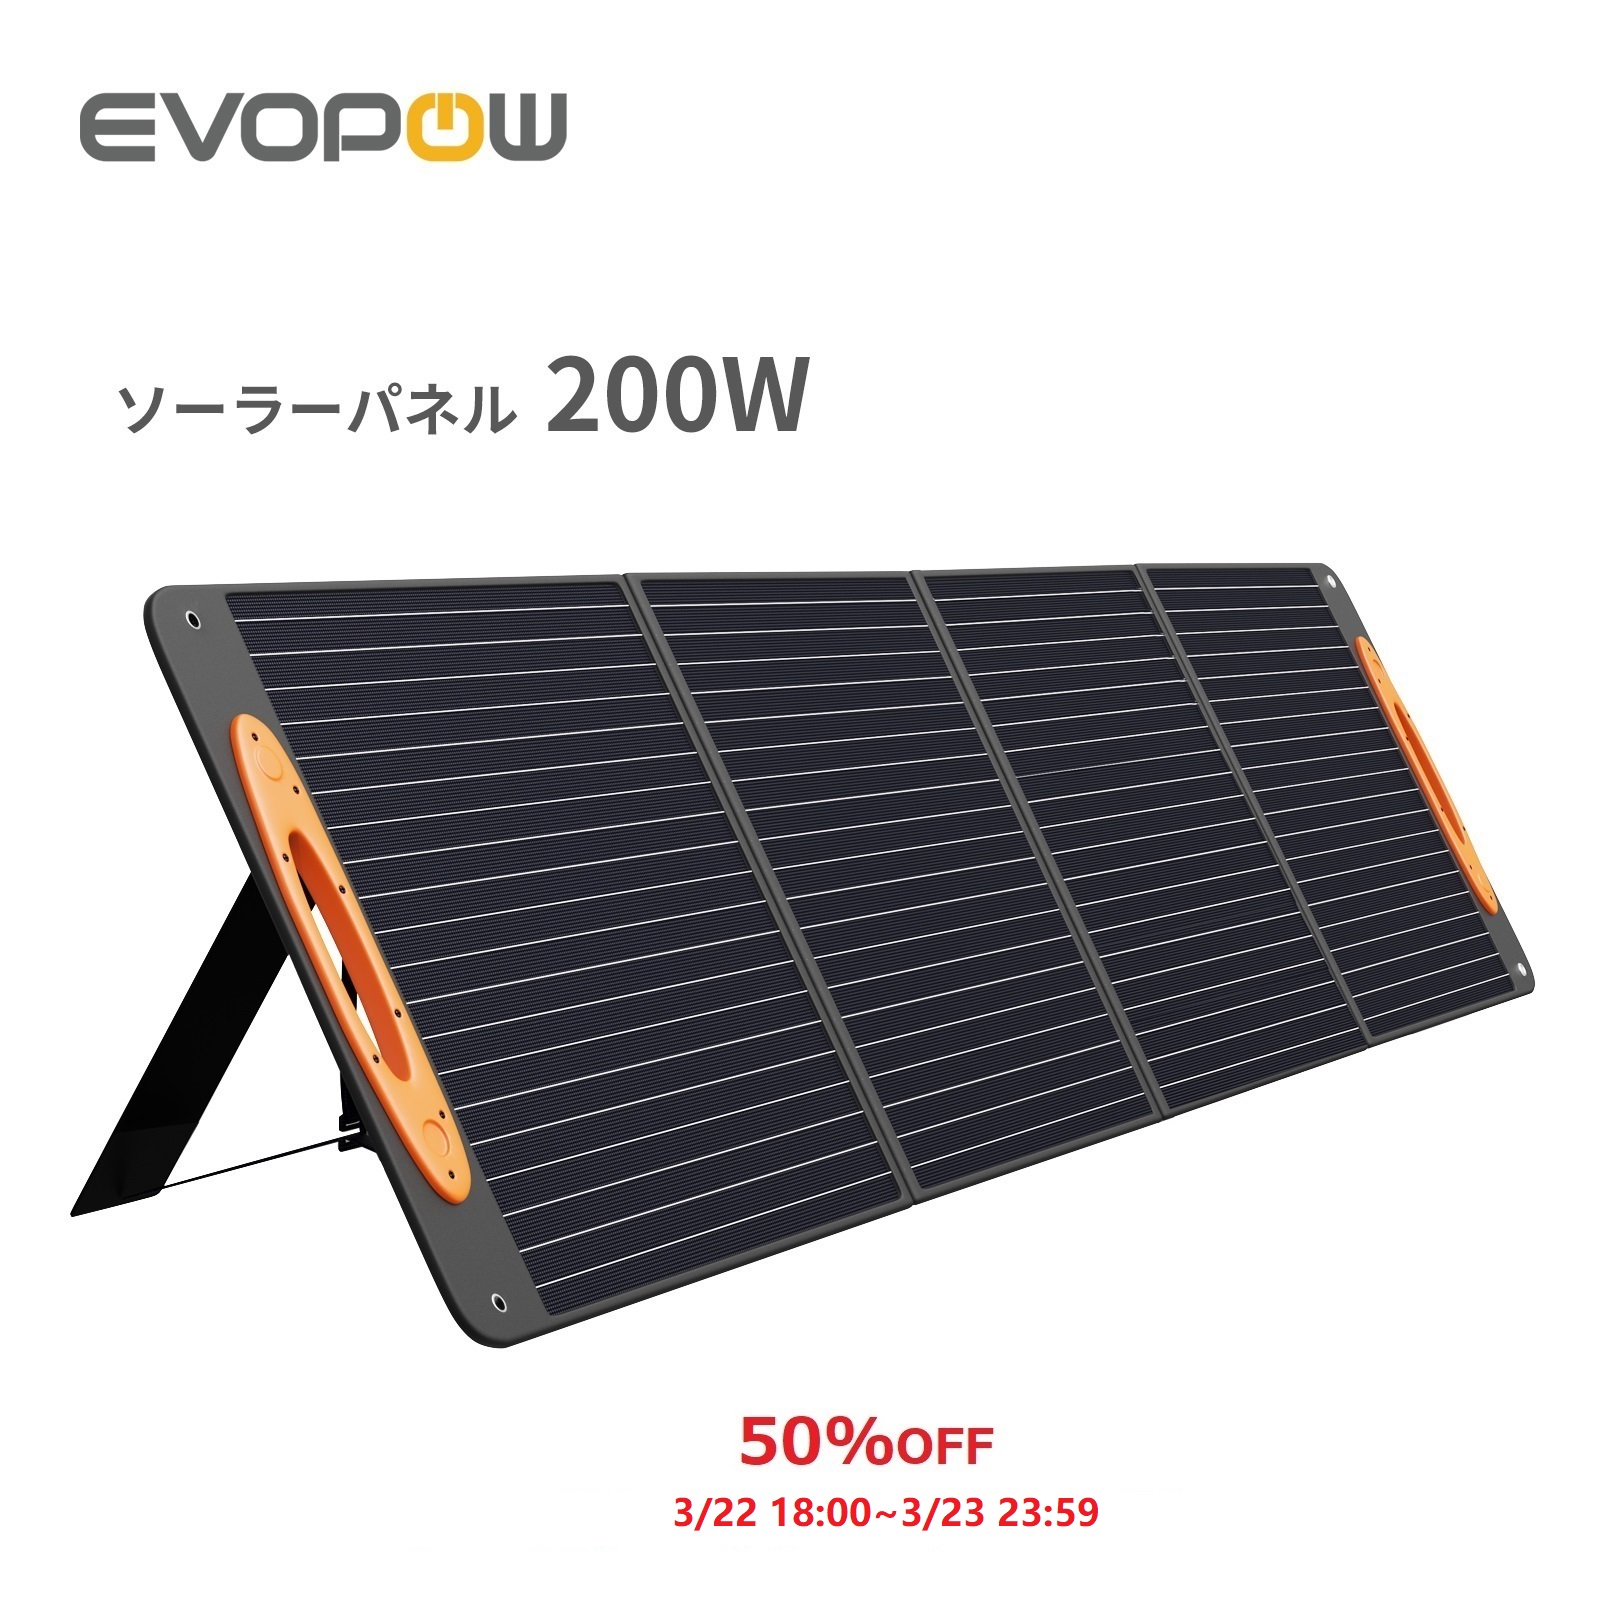 お手軽価格で贈りやすい Evopow ソーラーパネル 200W ソーラー